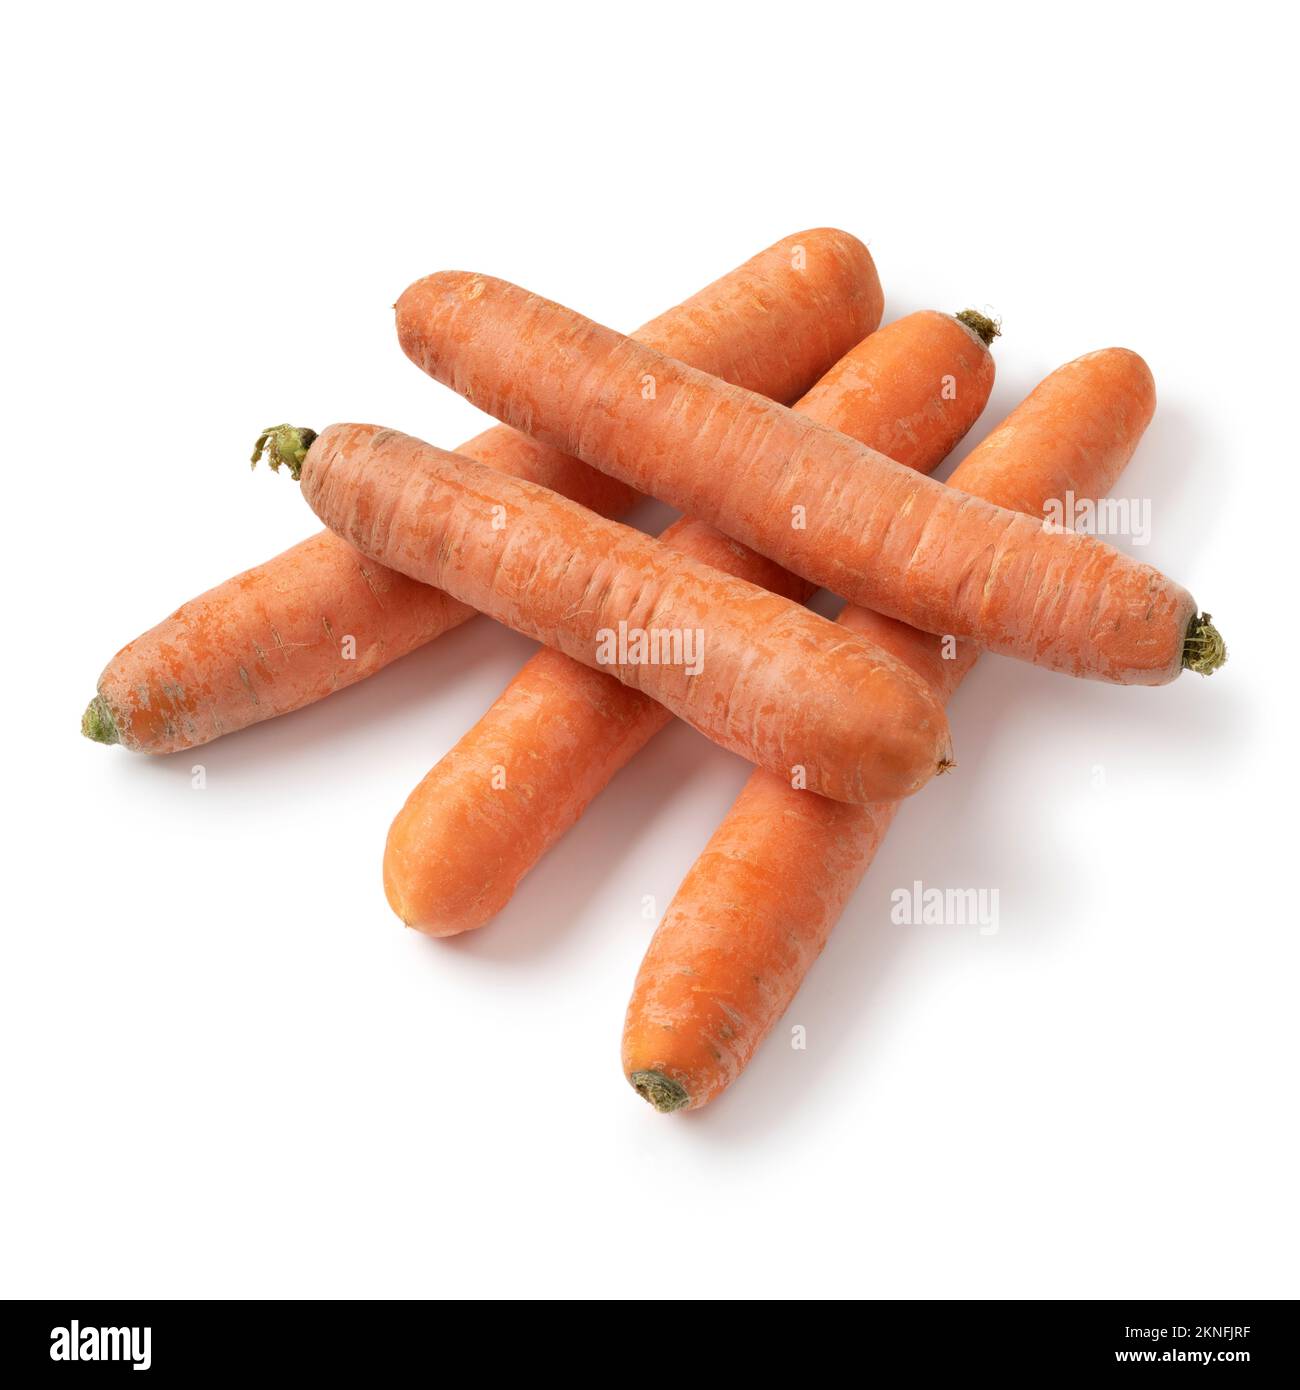 Mazzo di carote fresche crude e dolci invernali primo piano isolato su sfondo bianco Foto Stock